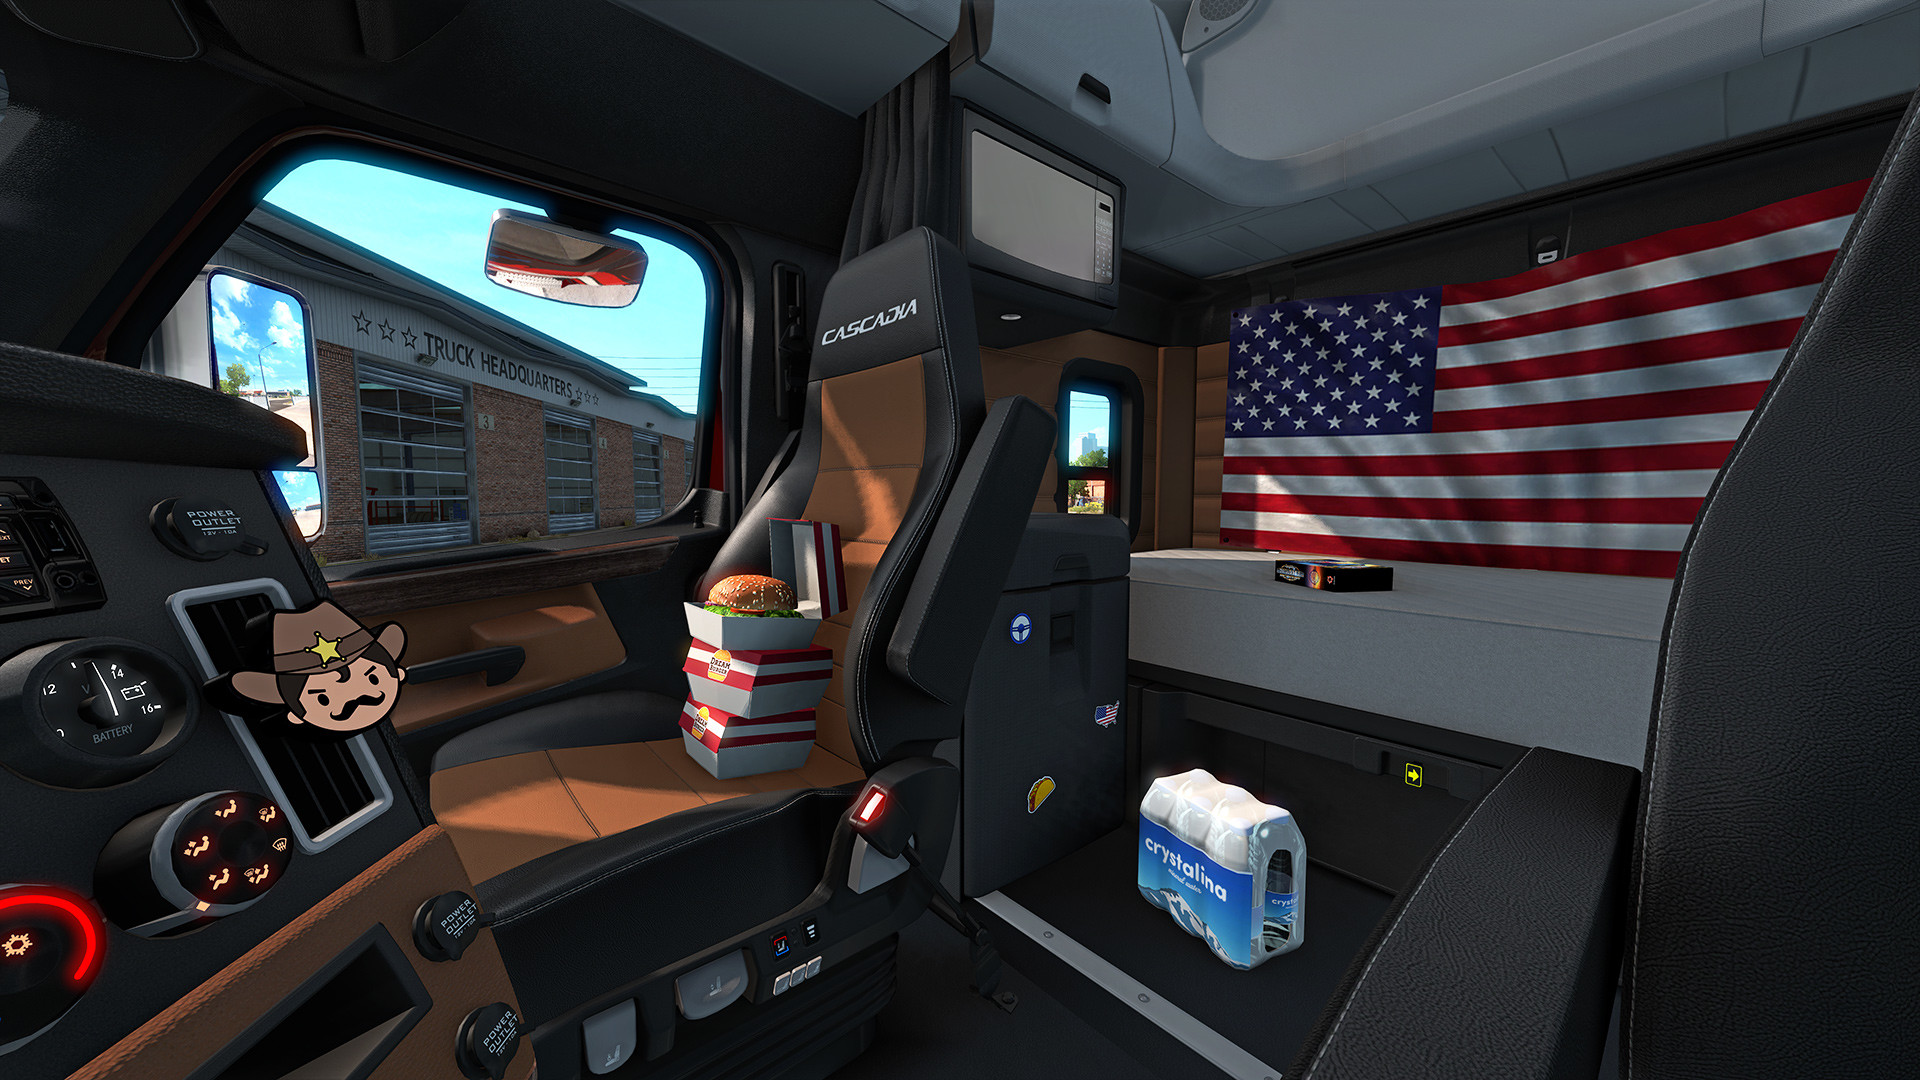 American Truck Simulator - Cabin Accessories DLC Steam CD Key 124.46 $